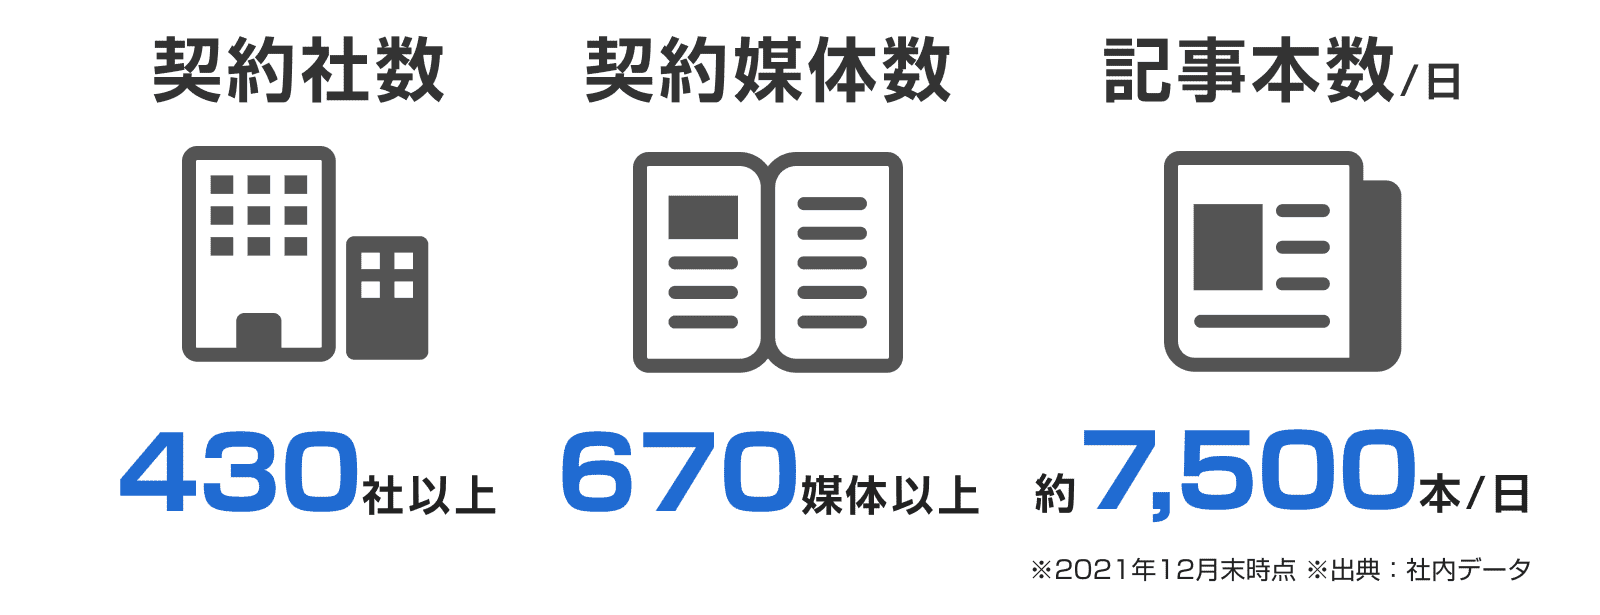 2021年12月末時点の社内データでは、契約社数は430社以上 契約媒体数は670媒体以上 記事本数は一日に約7500本配信いただいてます。